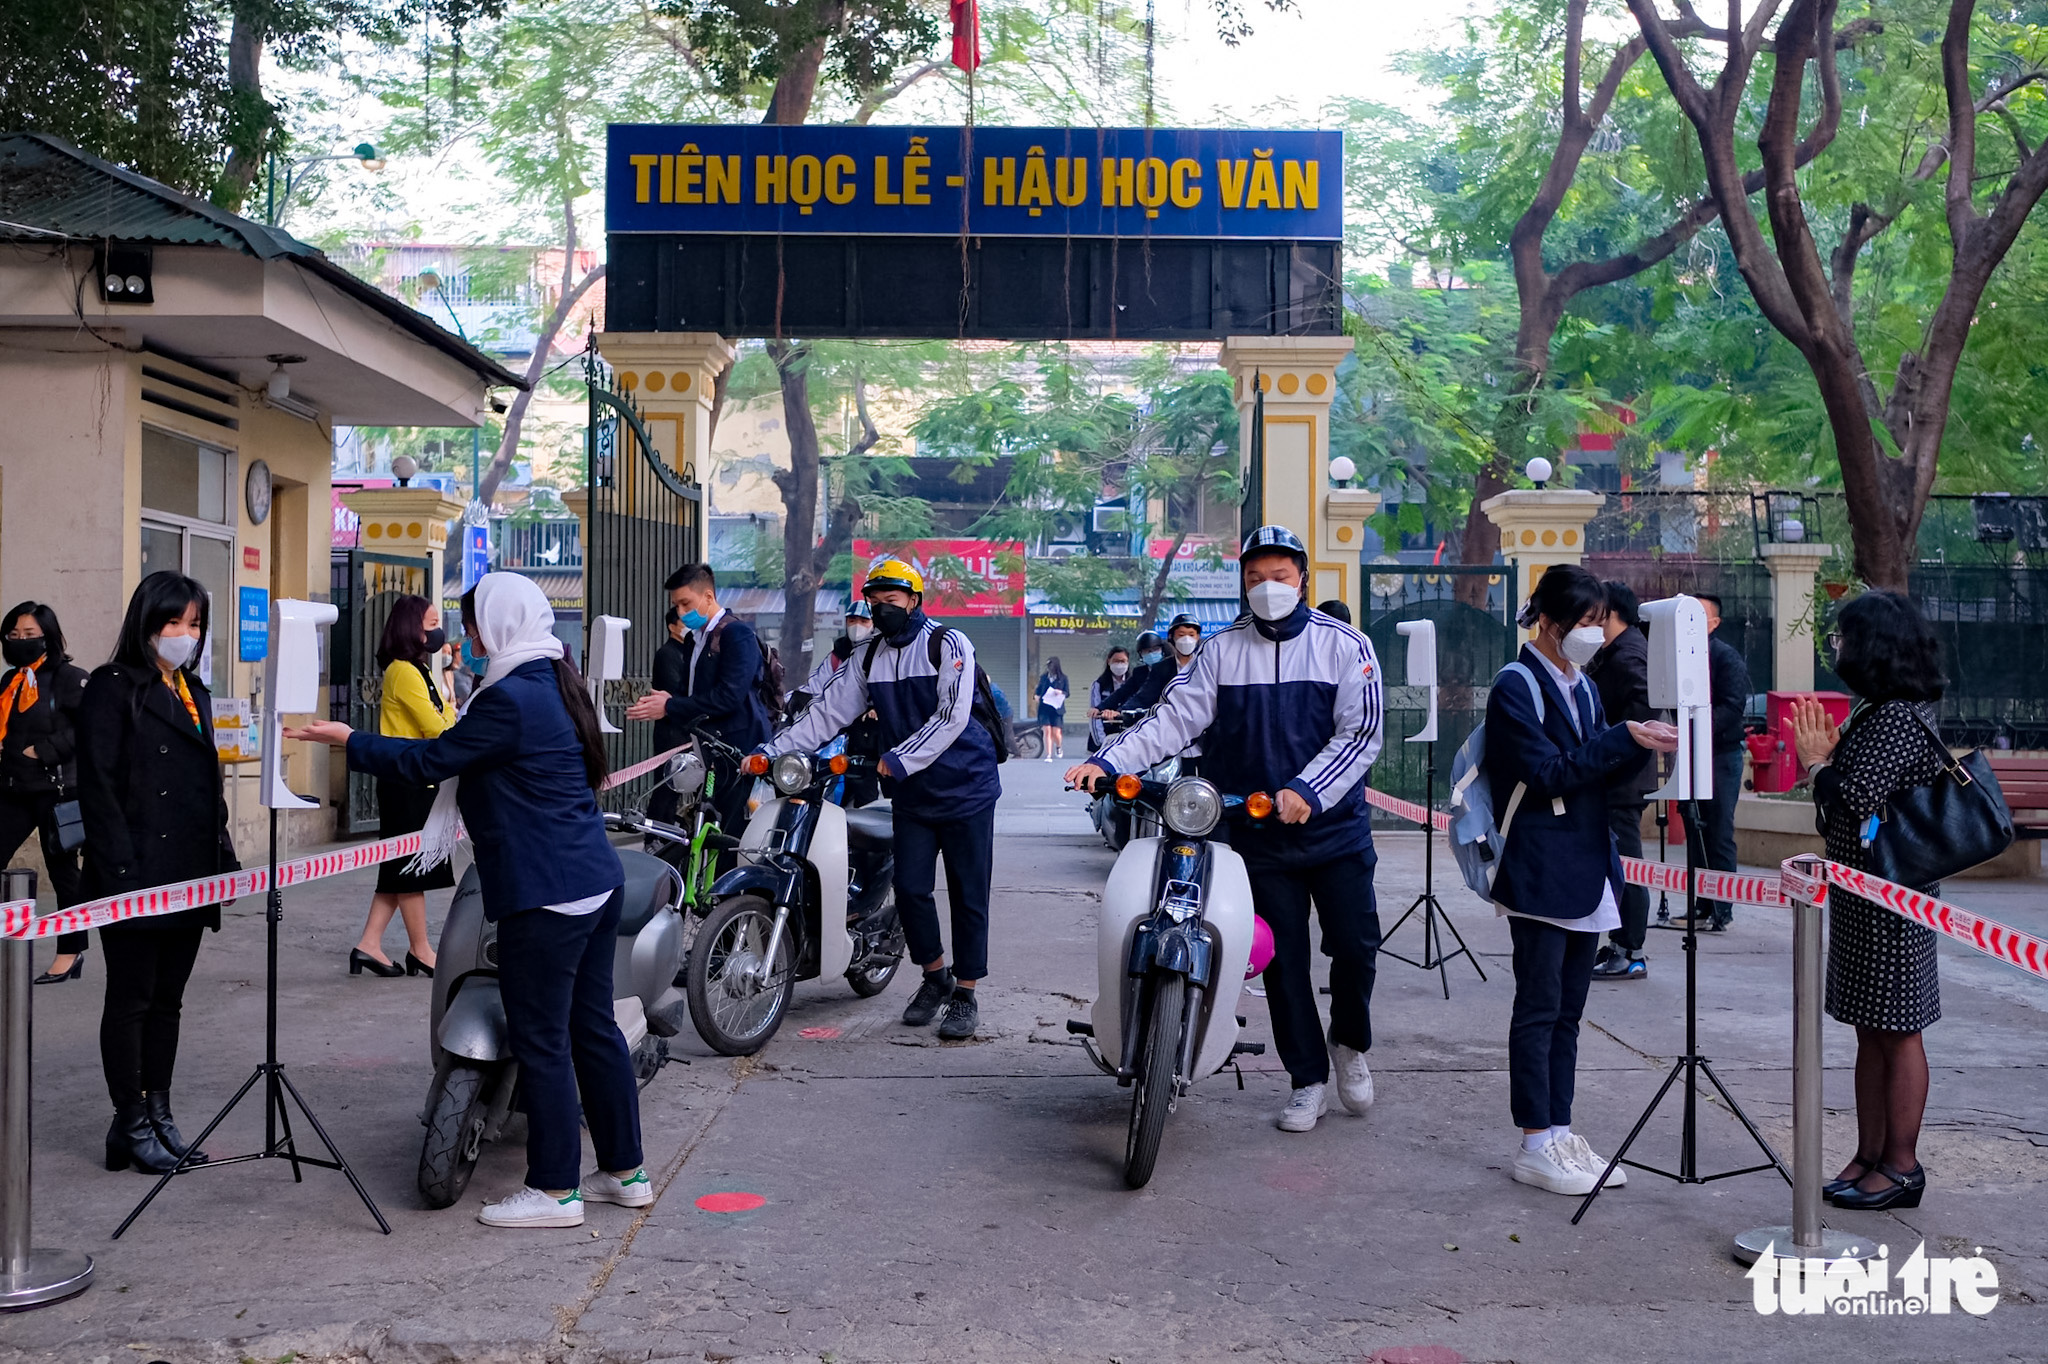 Hanoi 12th graders, Da Nang 1st graders back to school